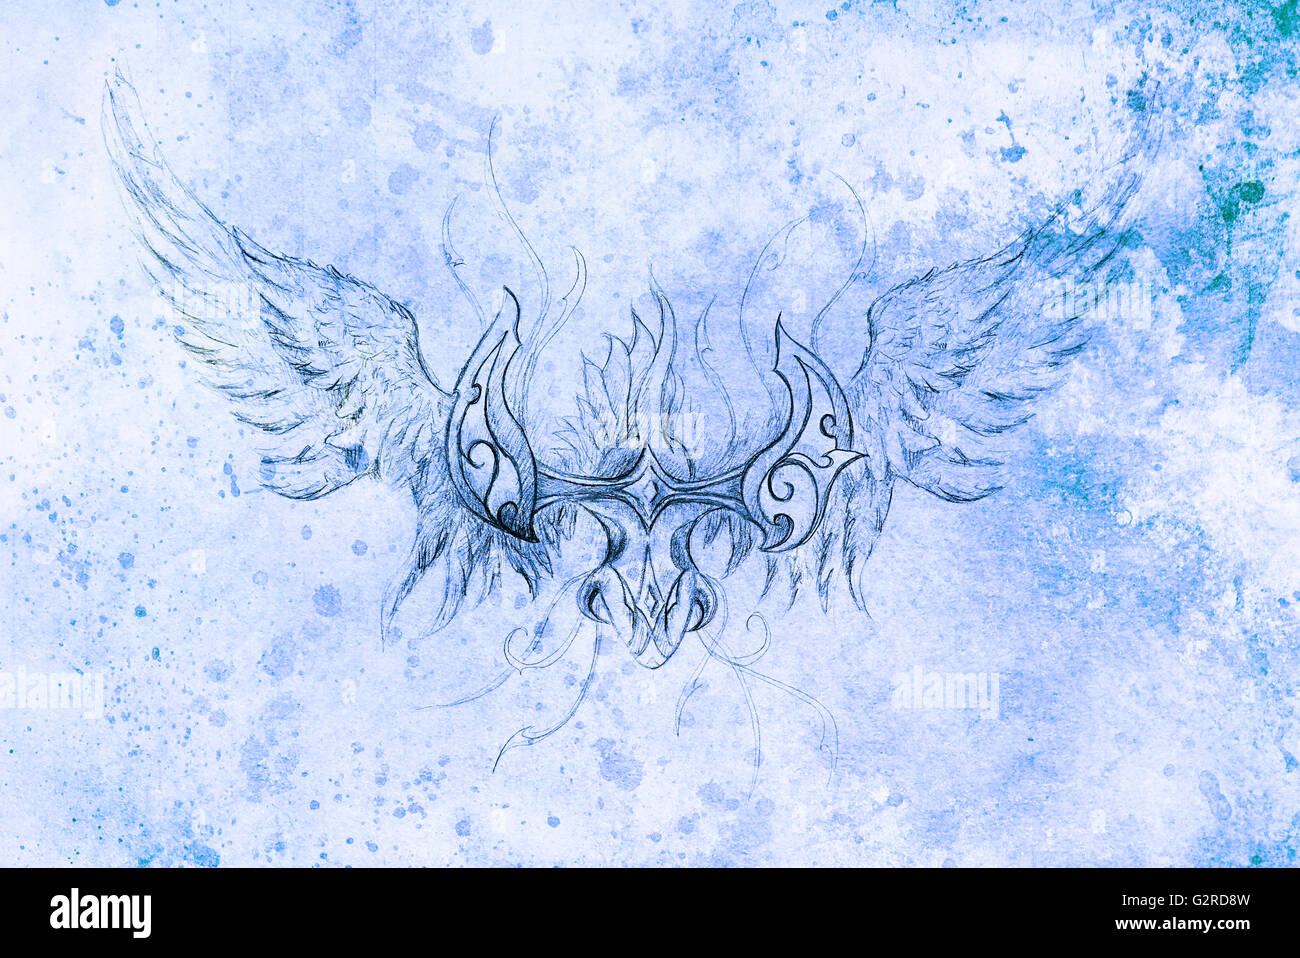 Dessin de dragon ornement. ordinateur collage et structure de couleur bleue. Effet d'hiver. Banque D'Images